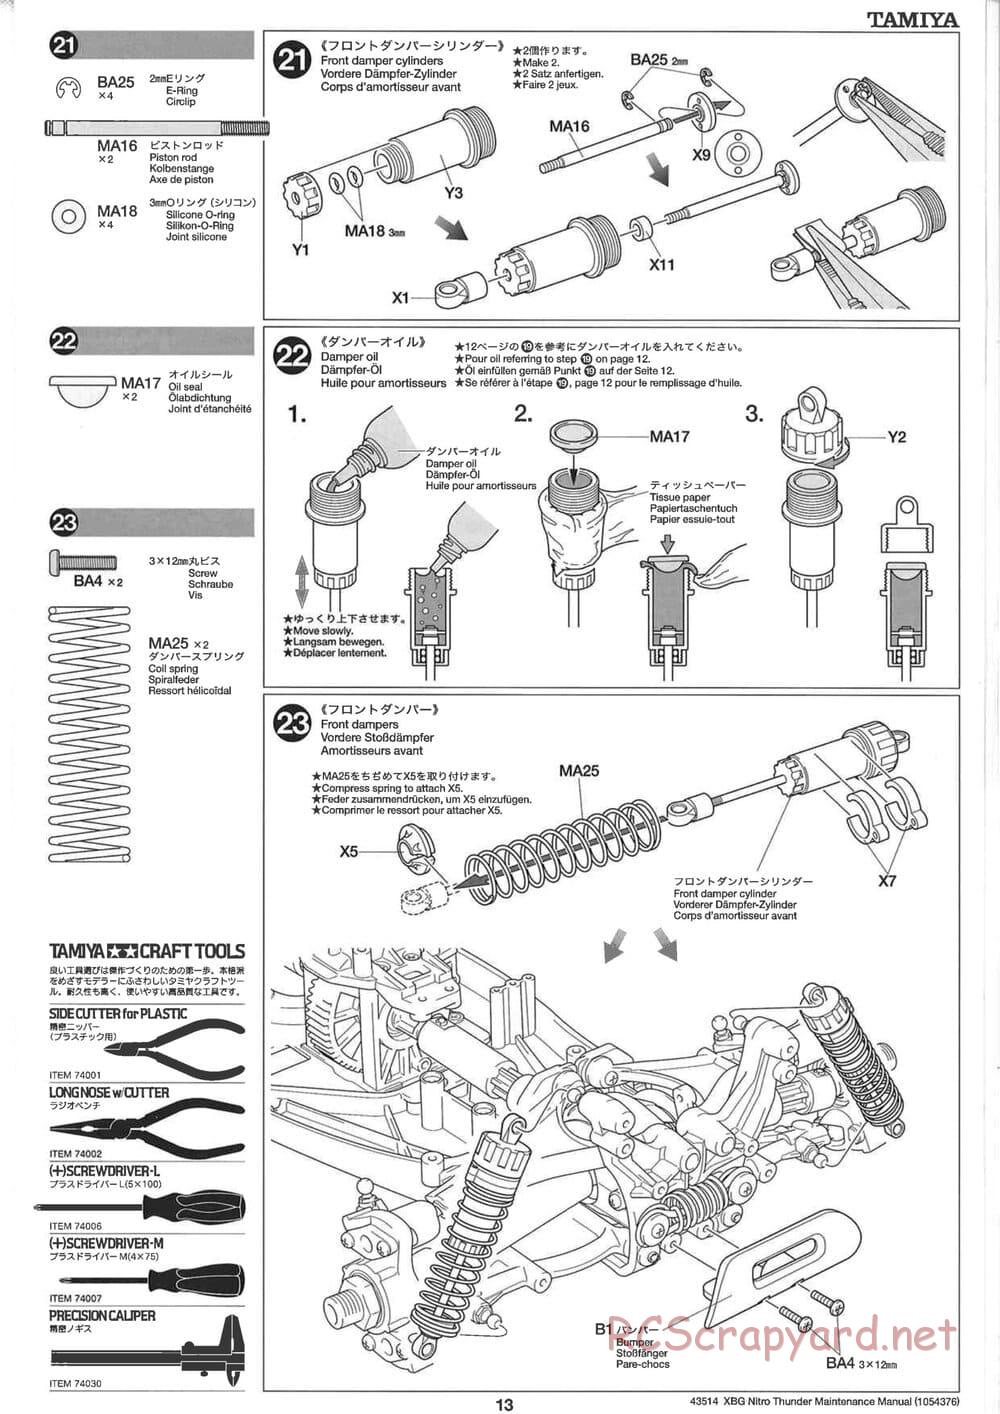 Tamiya - Nitro Thunder - NDF-01 Chassis - Manual - Page 13